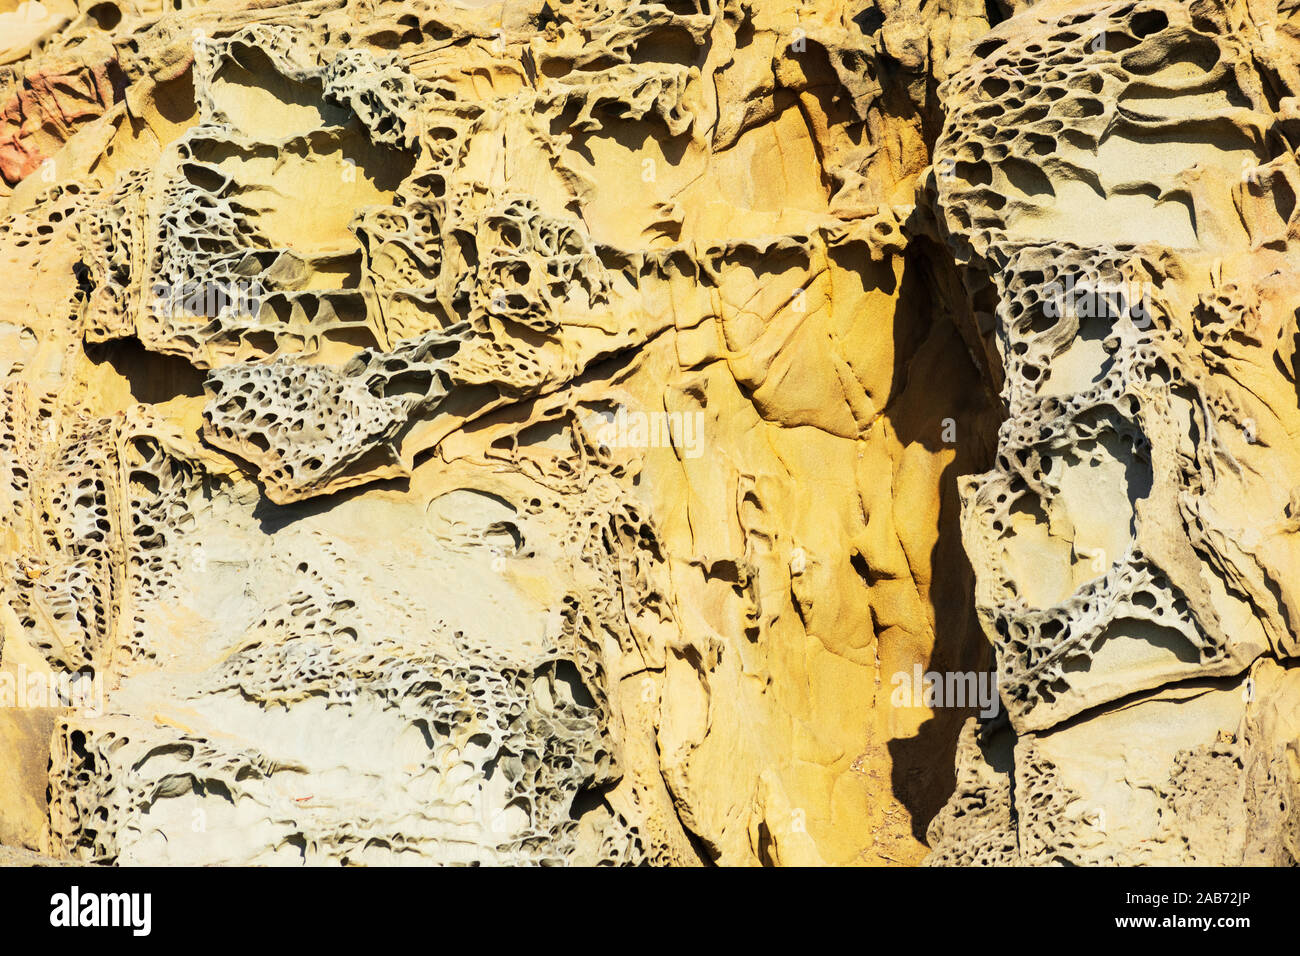 La formazione di tafoni, univocamente in arenaria a trama, grotta come caratteristiche e favo di miele come le strutture create in roccia attraverso un processo di resistenza agli agenti atmosferici. Foto Stock